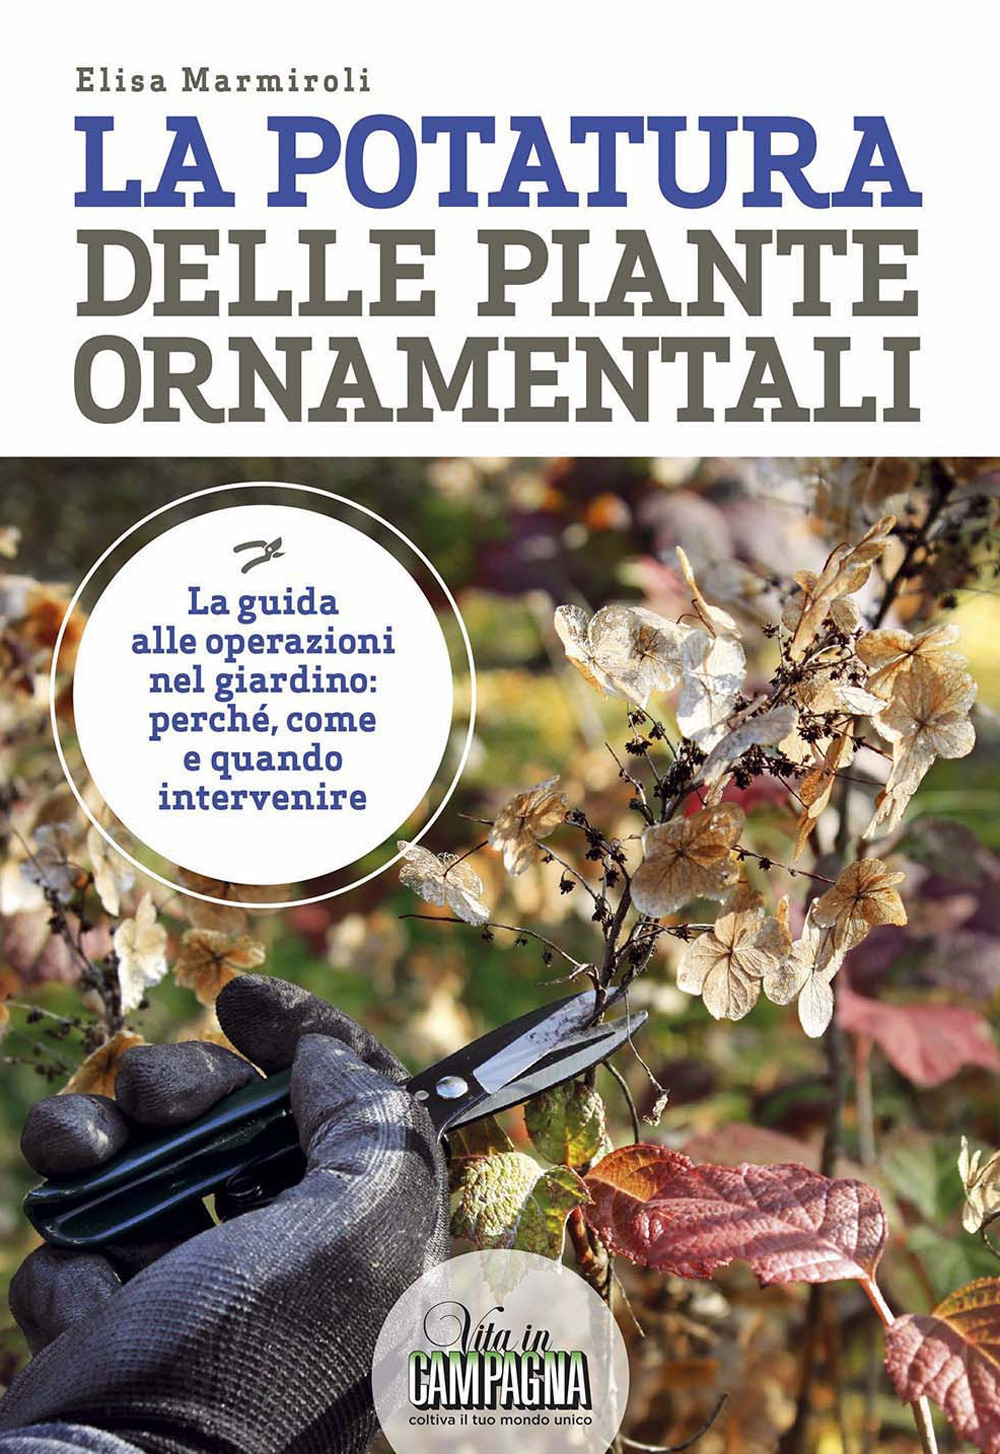 Libri Elisa Marmiroli - La Potatura Delle Piante Ornamentali NUOVO SIGILLATO, EDIZIONE DEL 20/03/2019 SUBITO DISPONIBILE